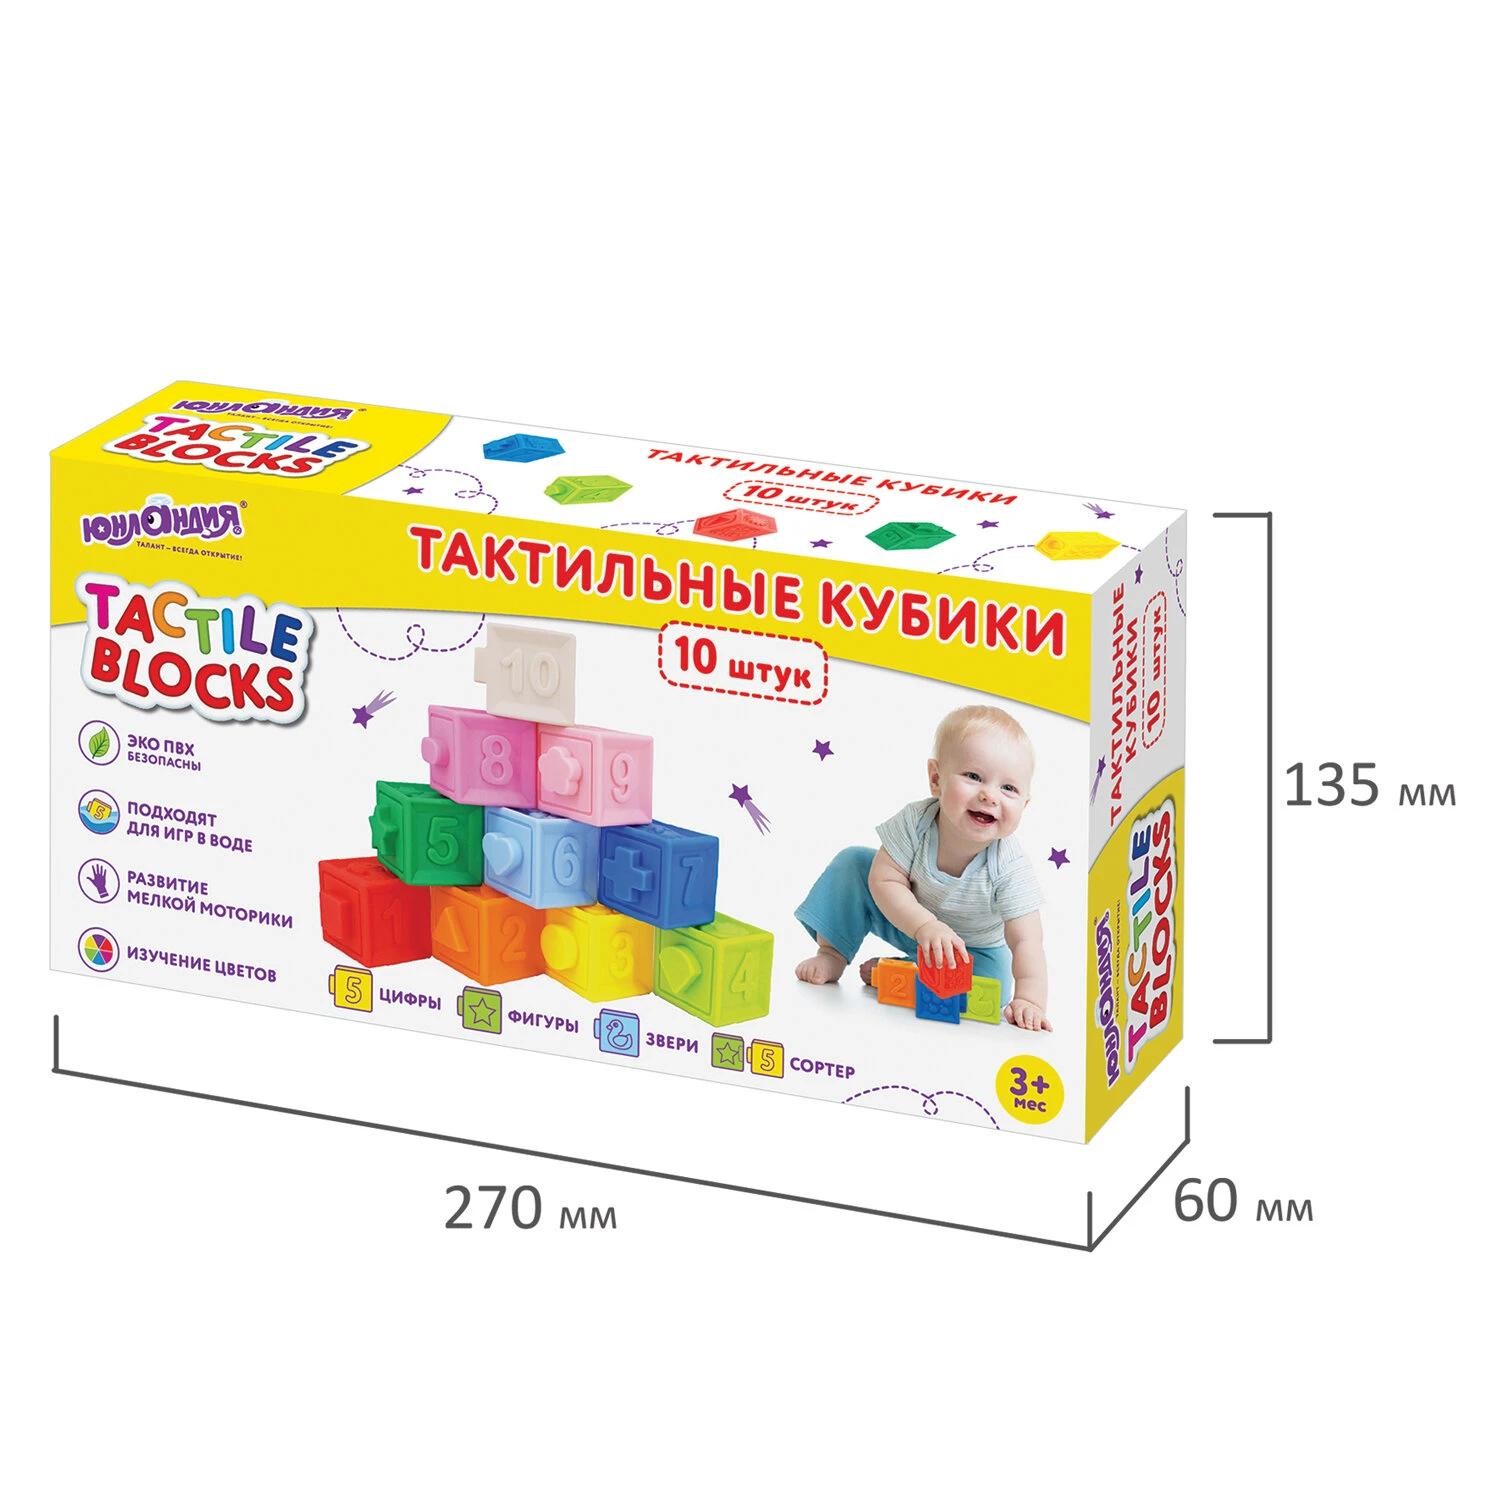 Тактильные кубики, сенсорные игрушки развивающие с функцией сортера, ЭКО, 10